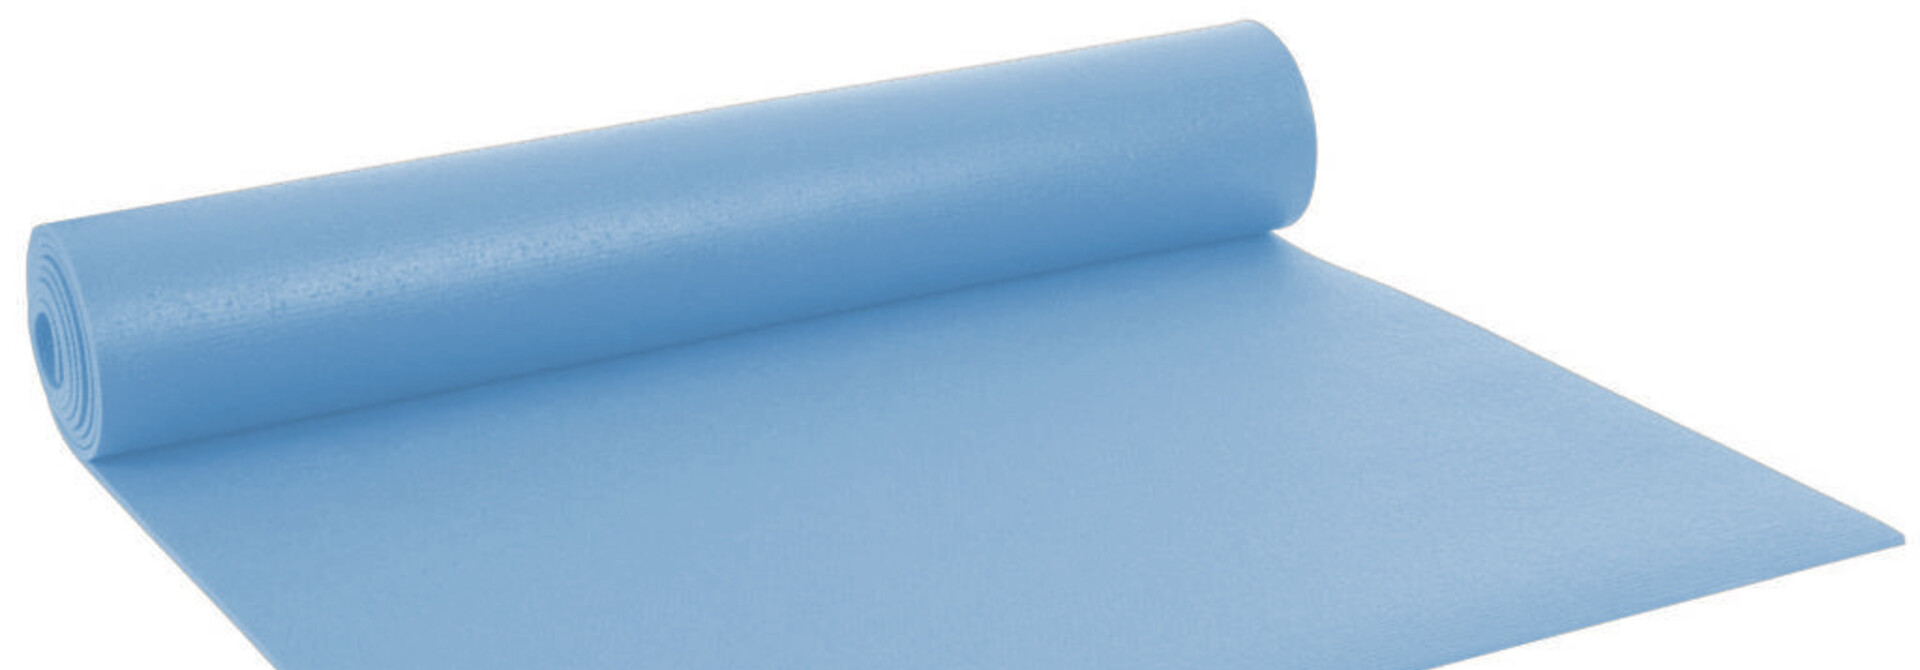 Yogisha Studio Yoga Mat XL - Light Blue